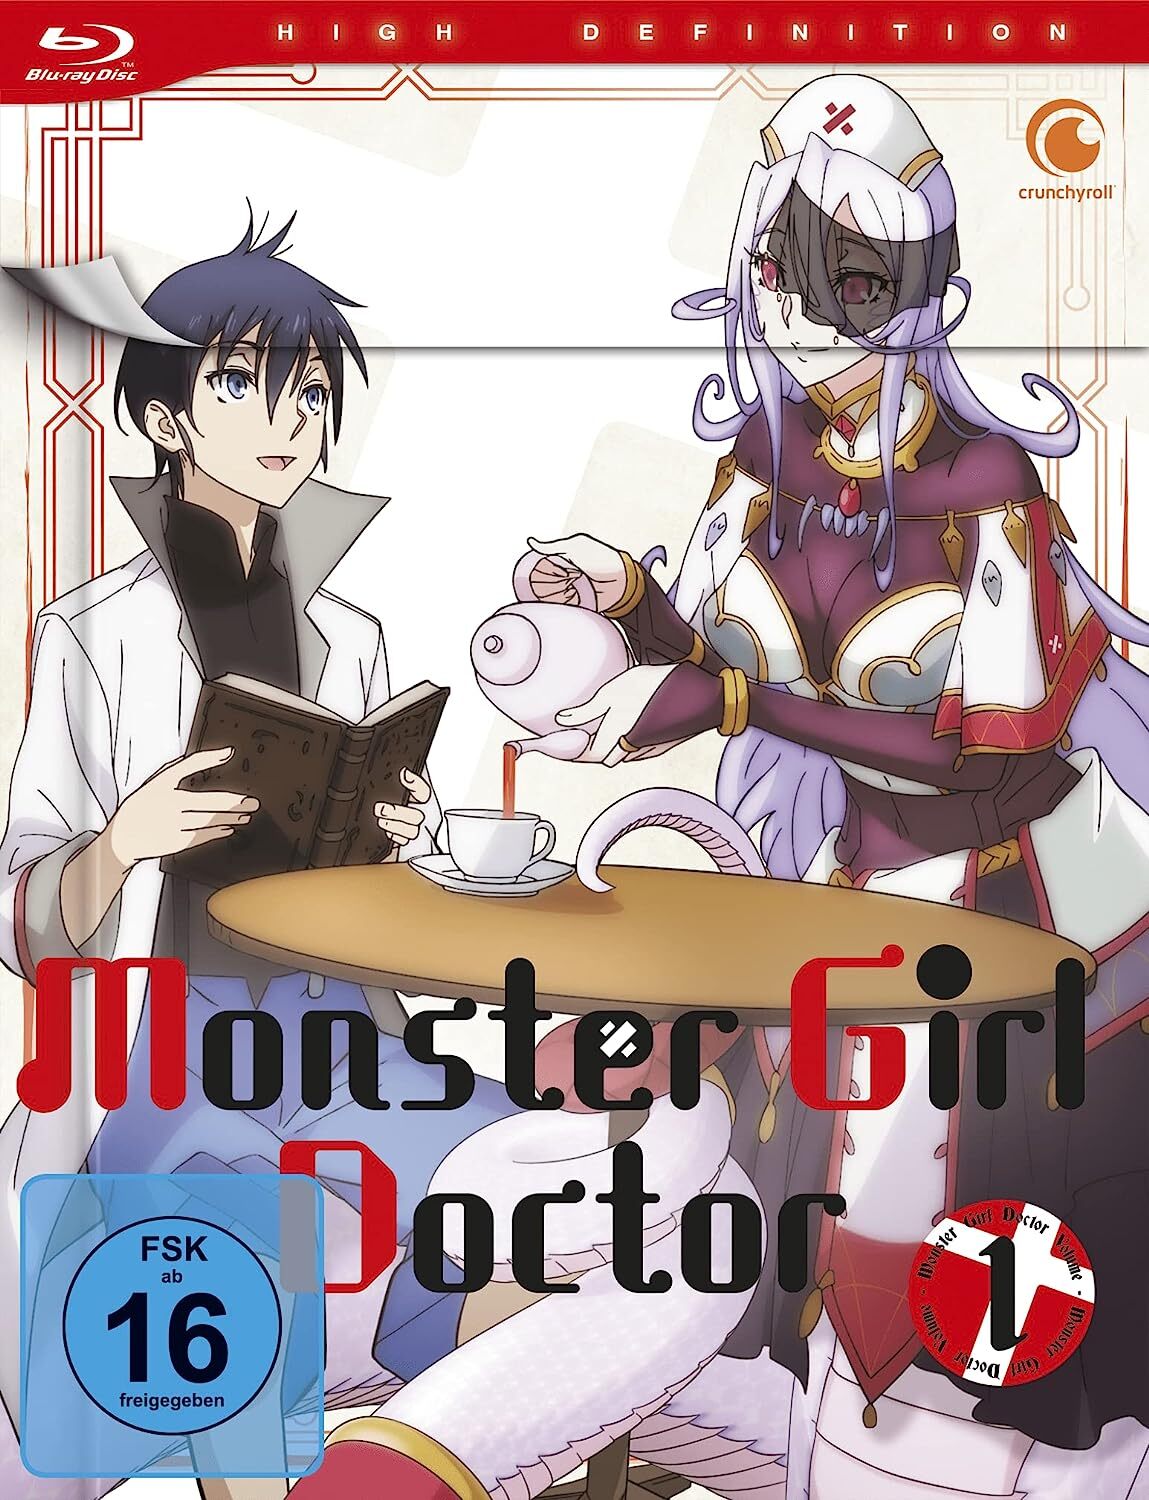 Anime Like Monster Girl Doctor